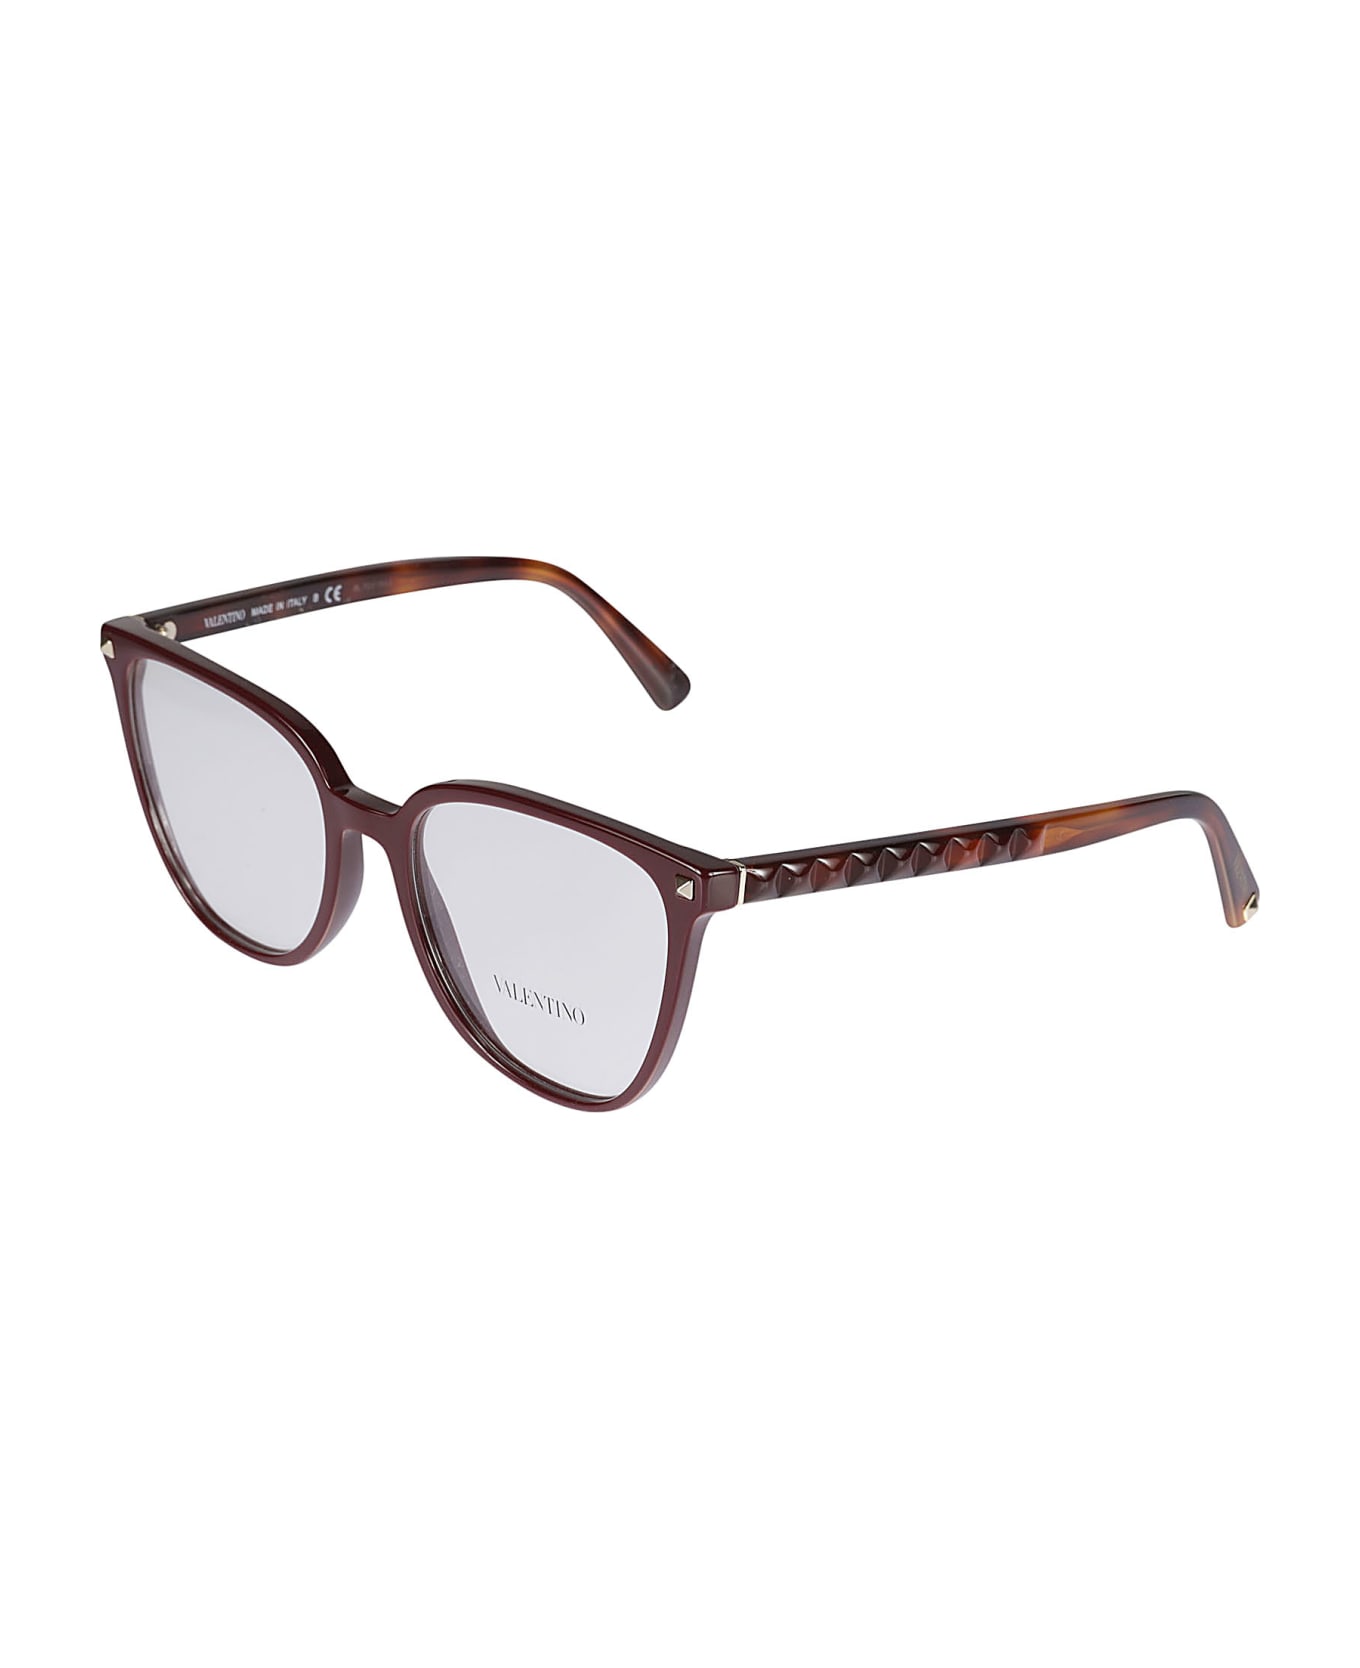 Valentino Eyewear Vista5120 Glasses - 5120 アイウェア